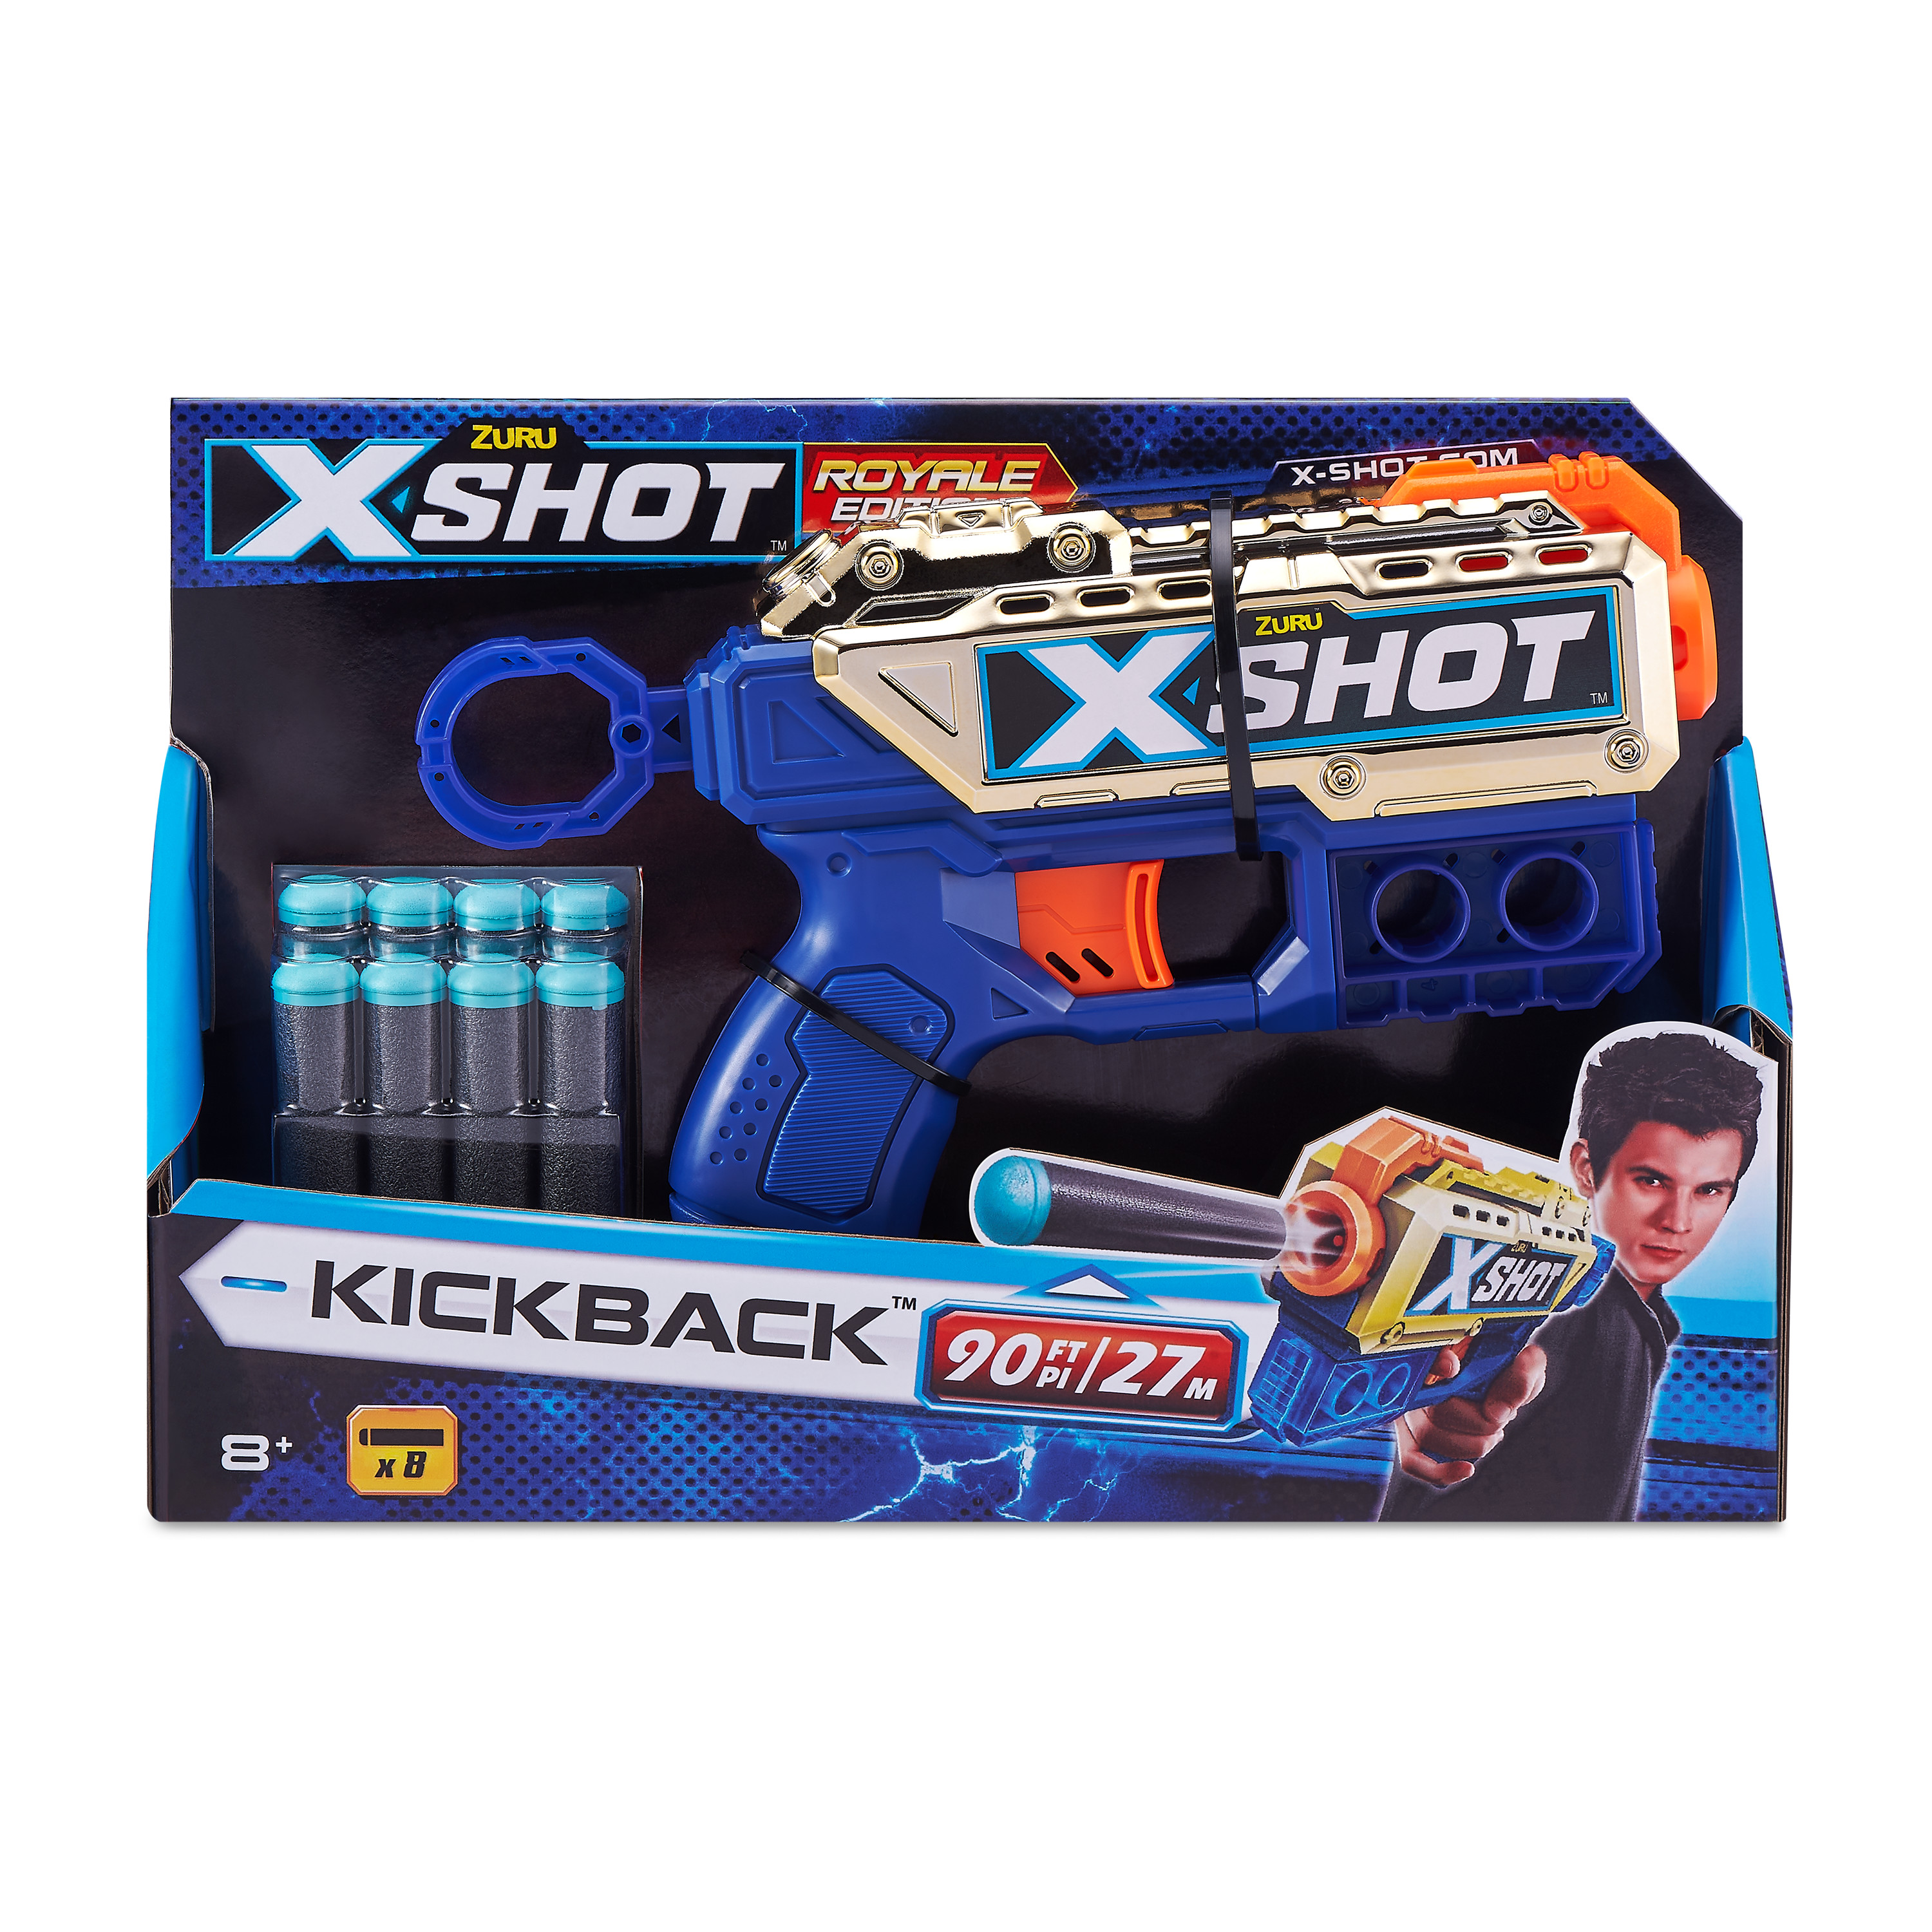 X-SHOT - Gold Kickback